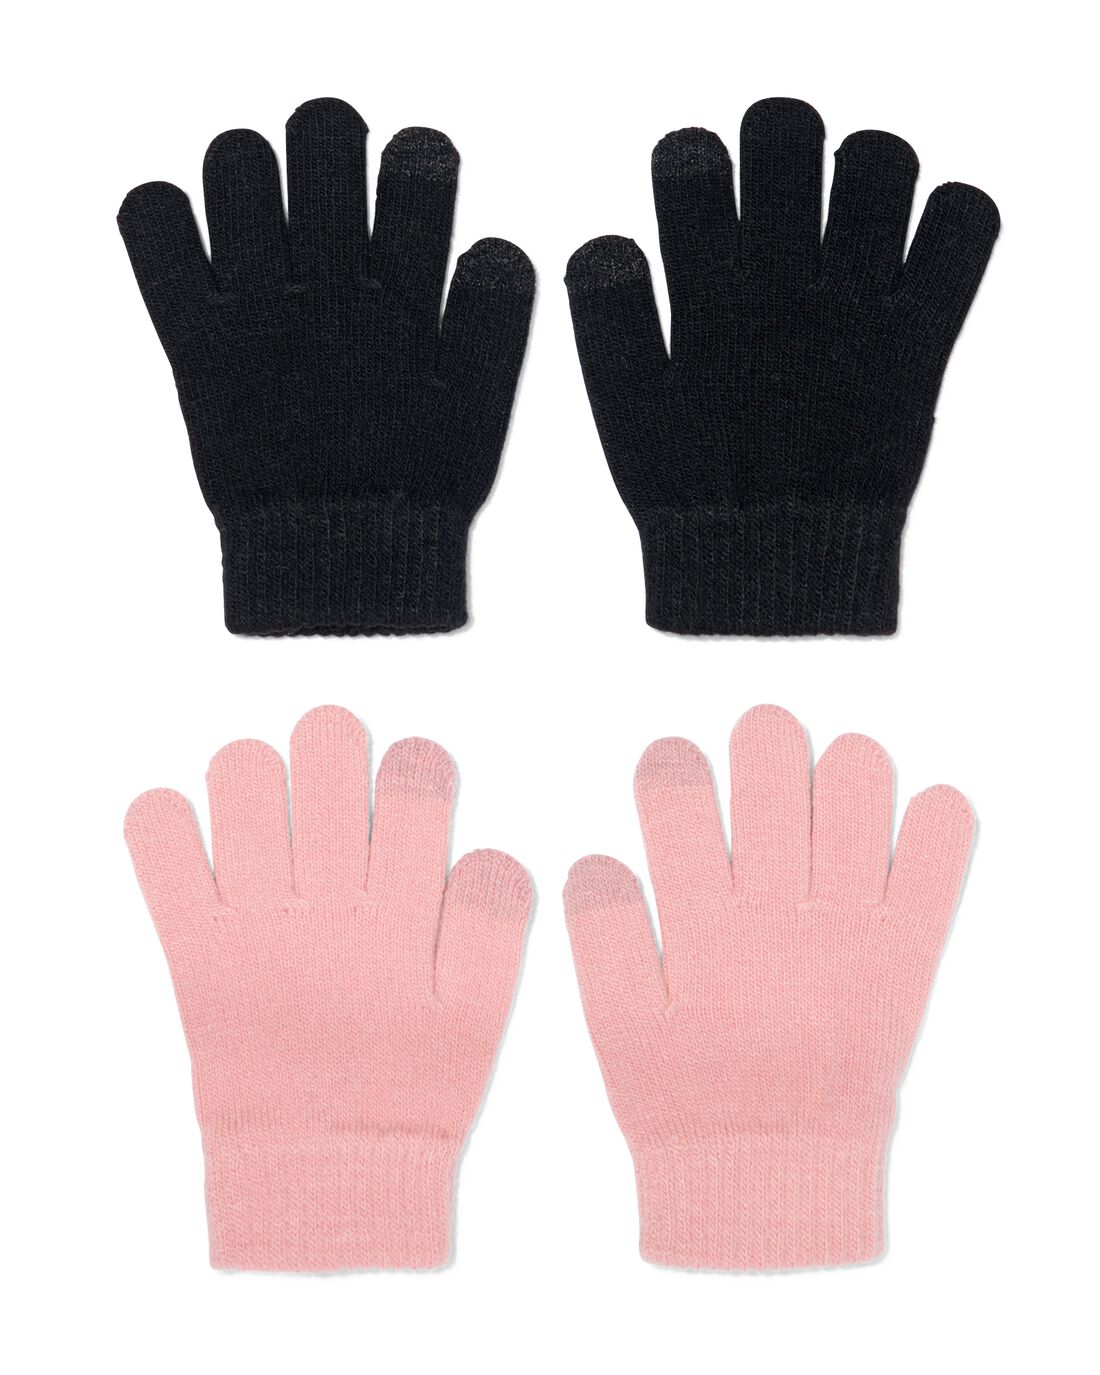 HEMA Kinder Handschoenen Met Touchscreen Gebreid 2 Paar Roze (roze)